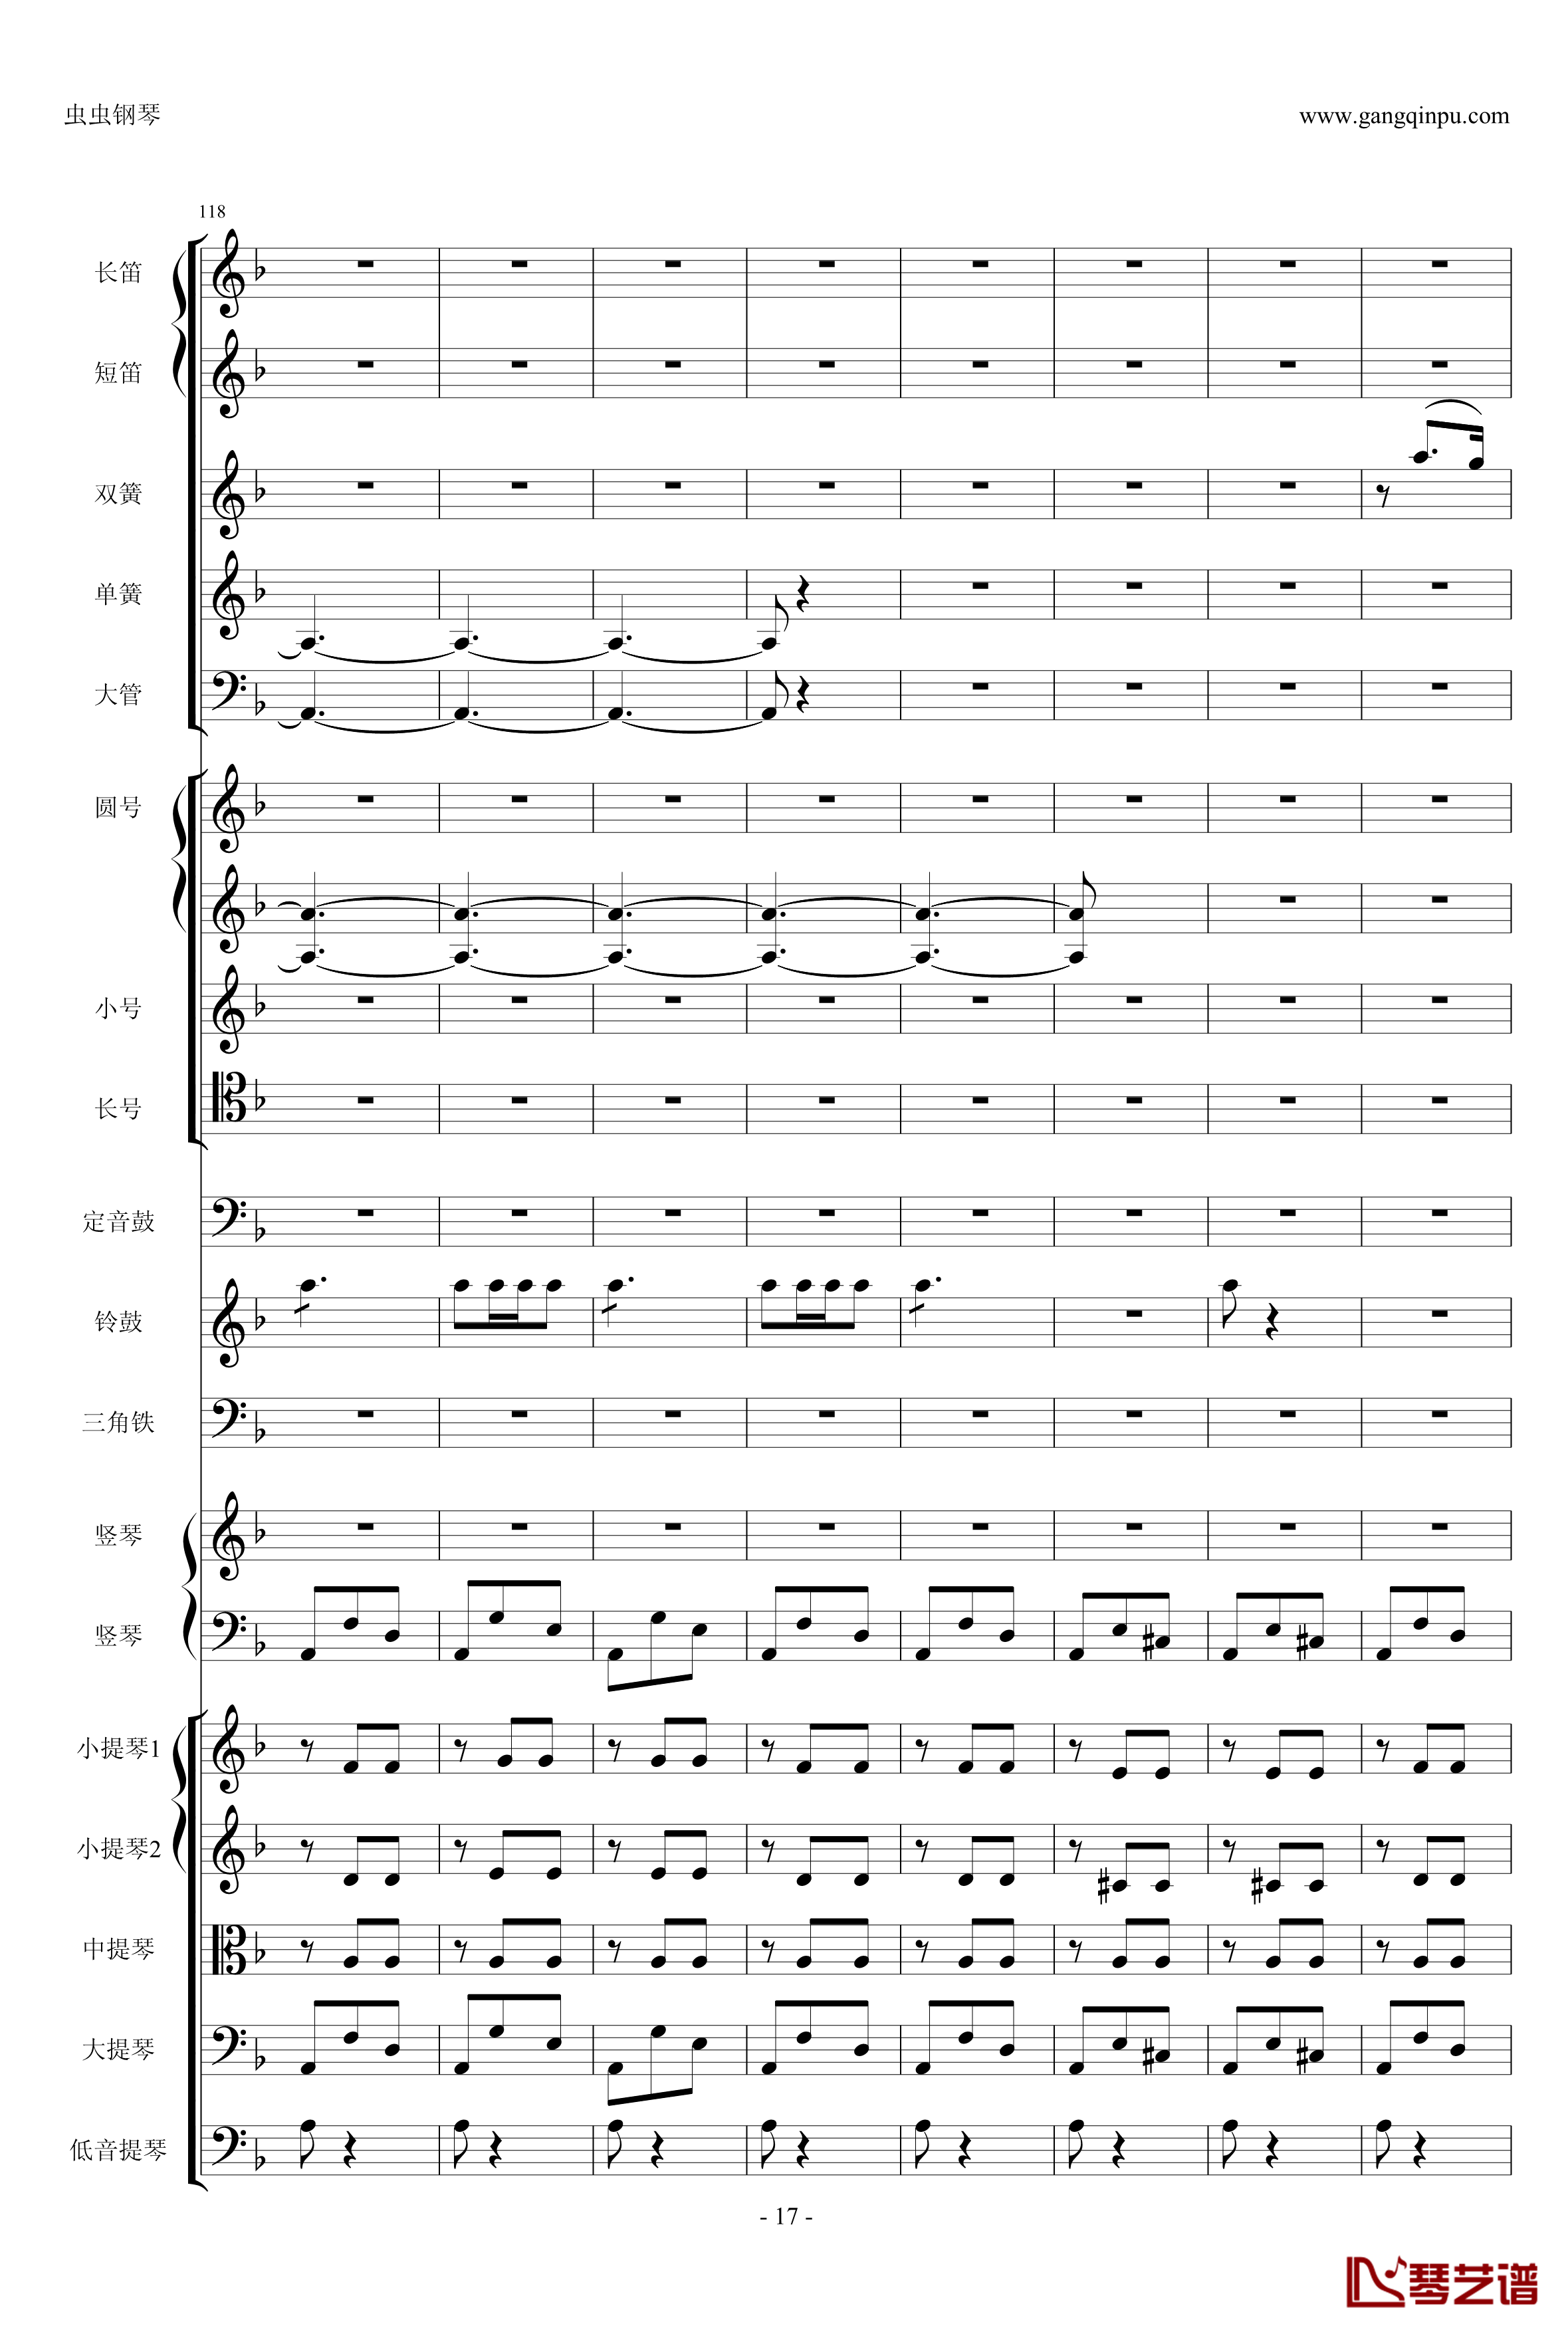 歌剧卡门选段钢琴谱-比才-Bizet- 第四幕间奏曲17